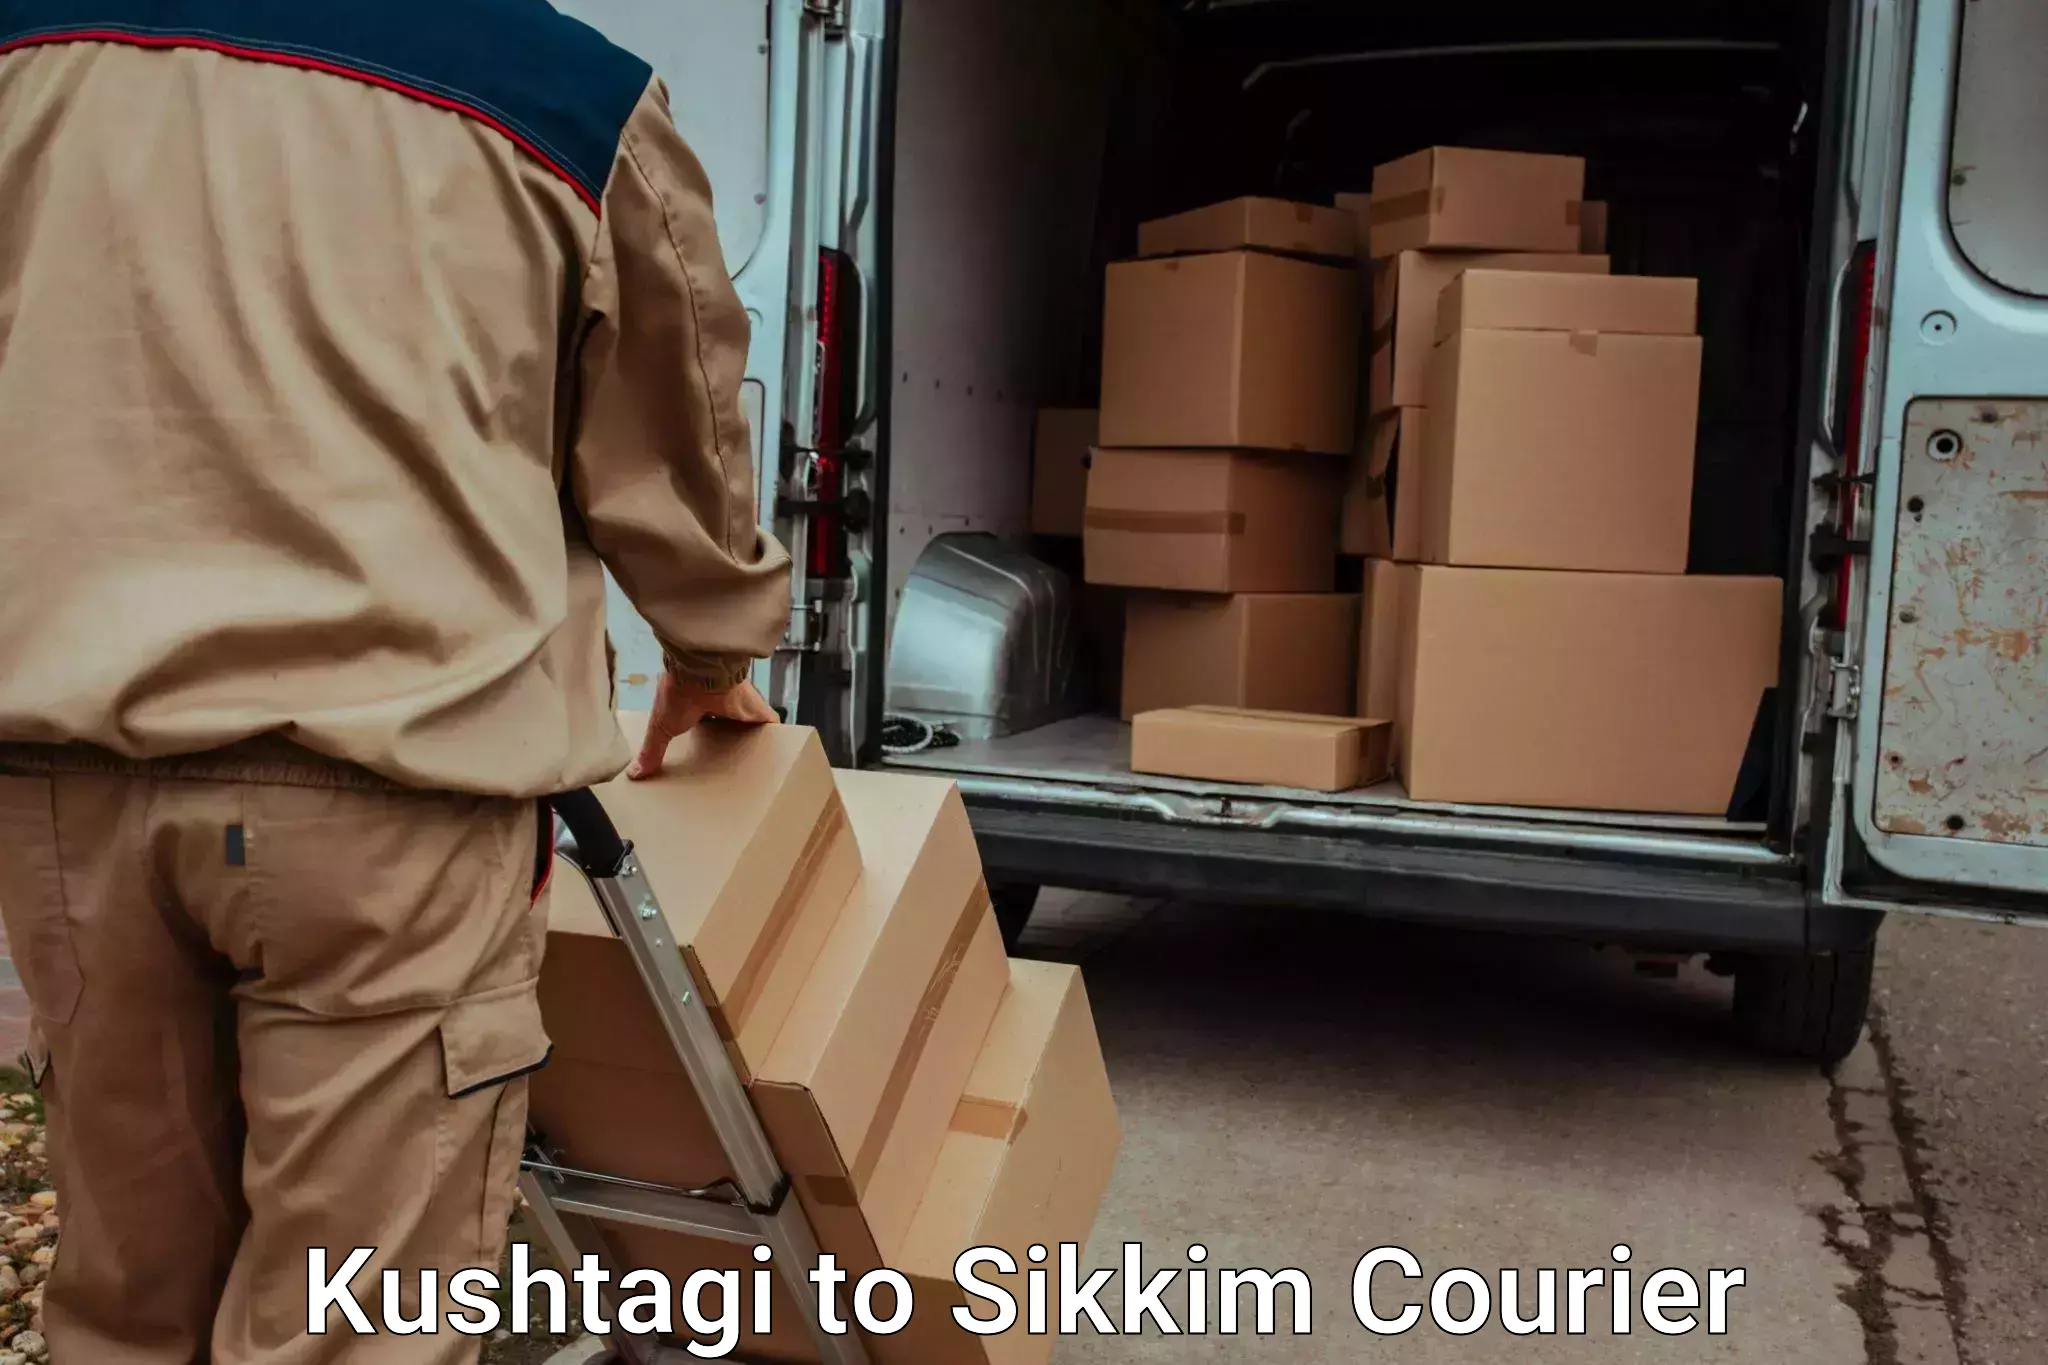 Personal effects shipping Kushtagi to Jorethang